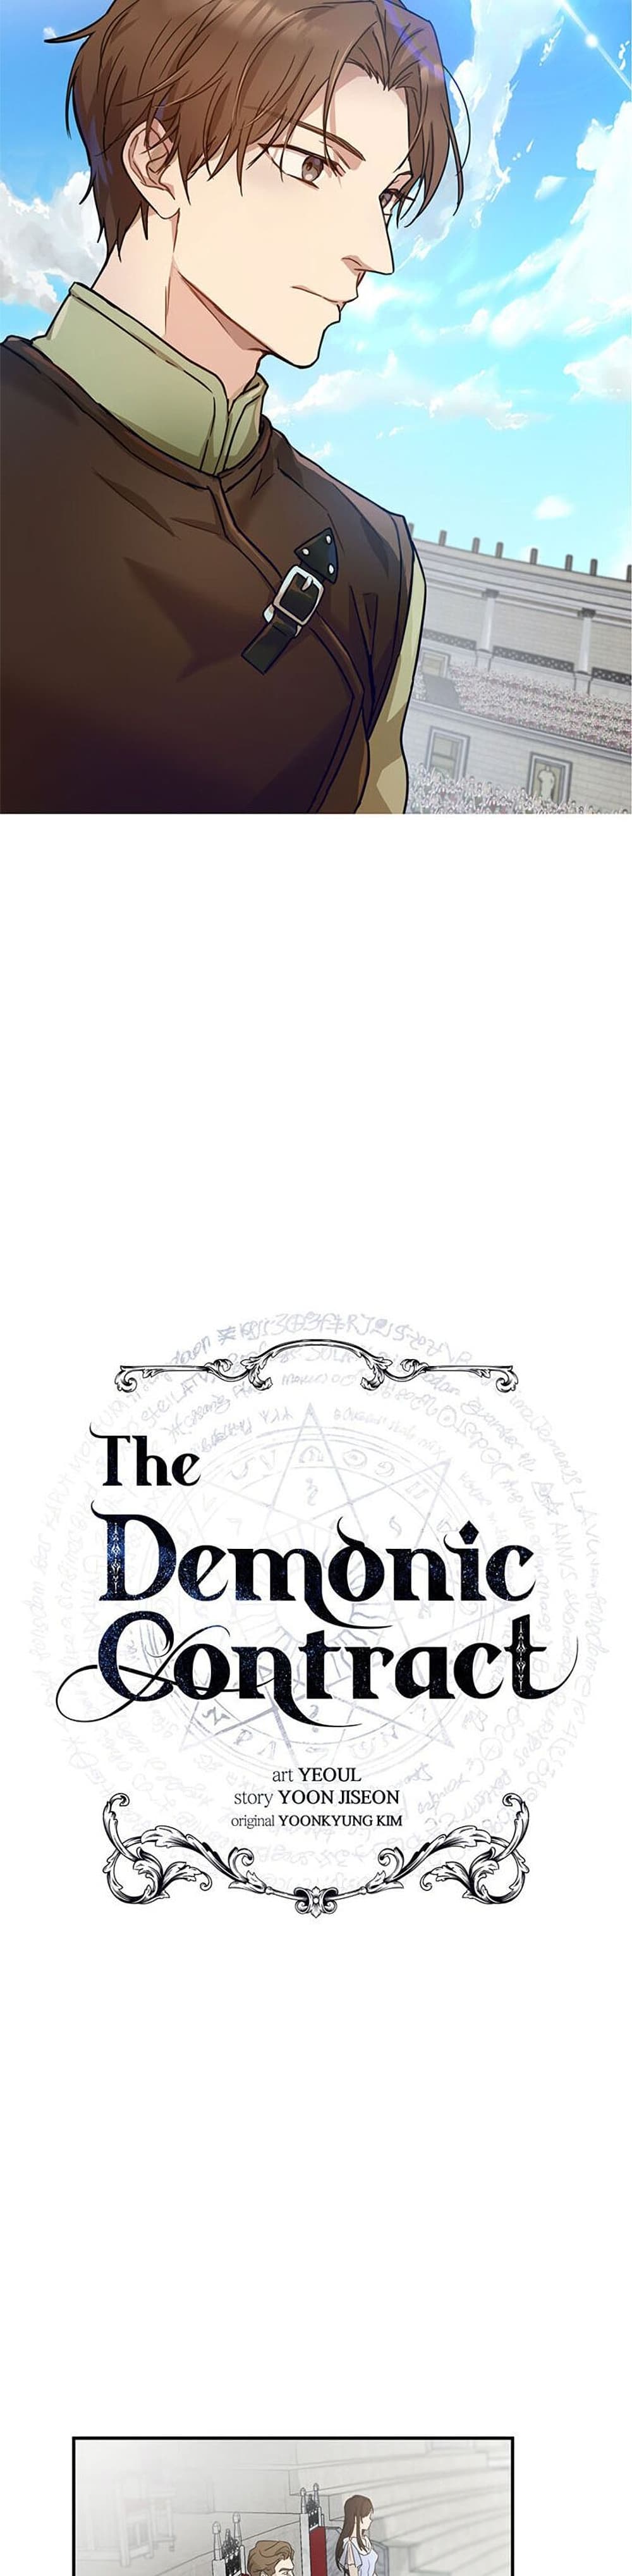 The Demonic Contract เธ•เธญเธเธ—เธตเน 22 (4)